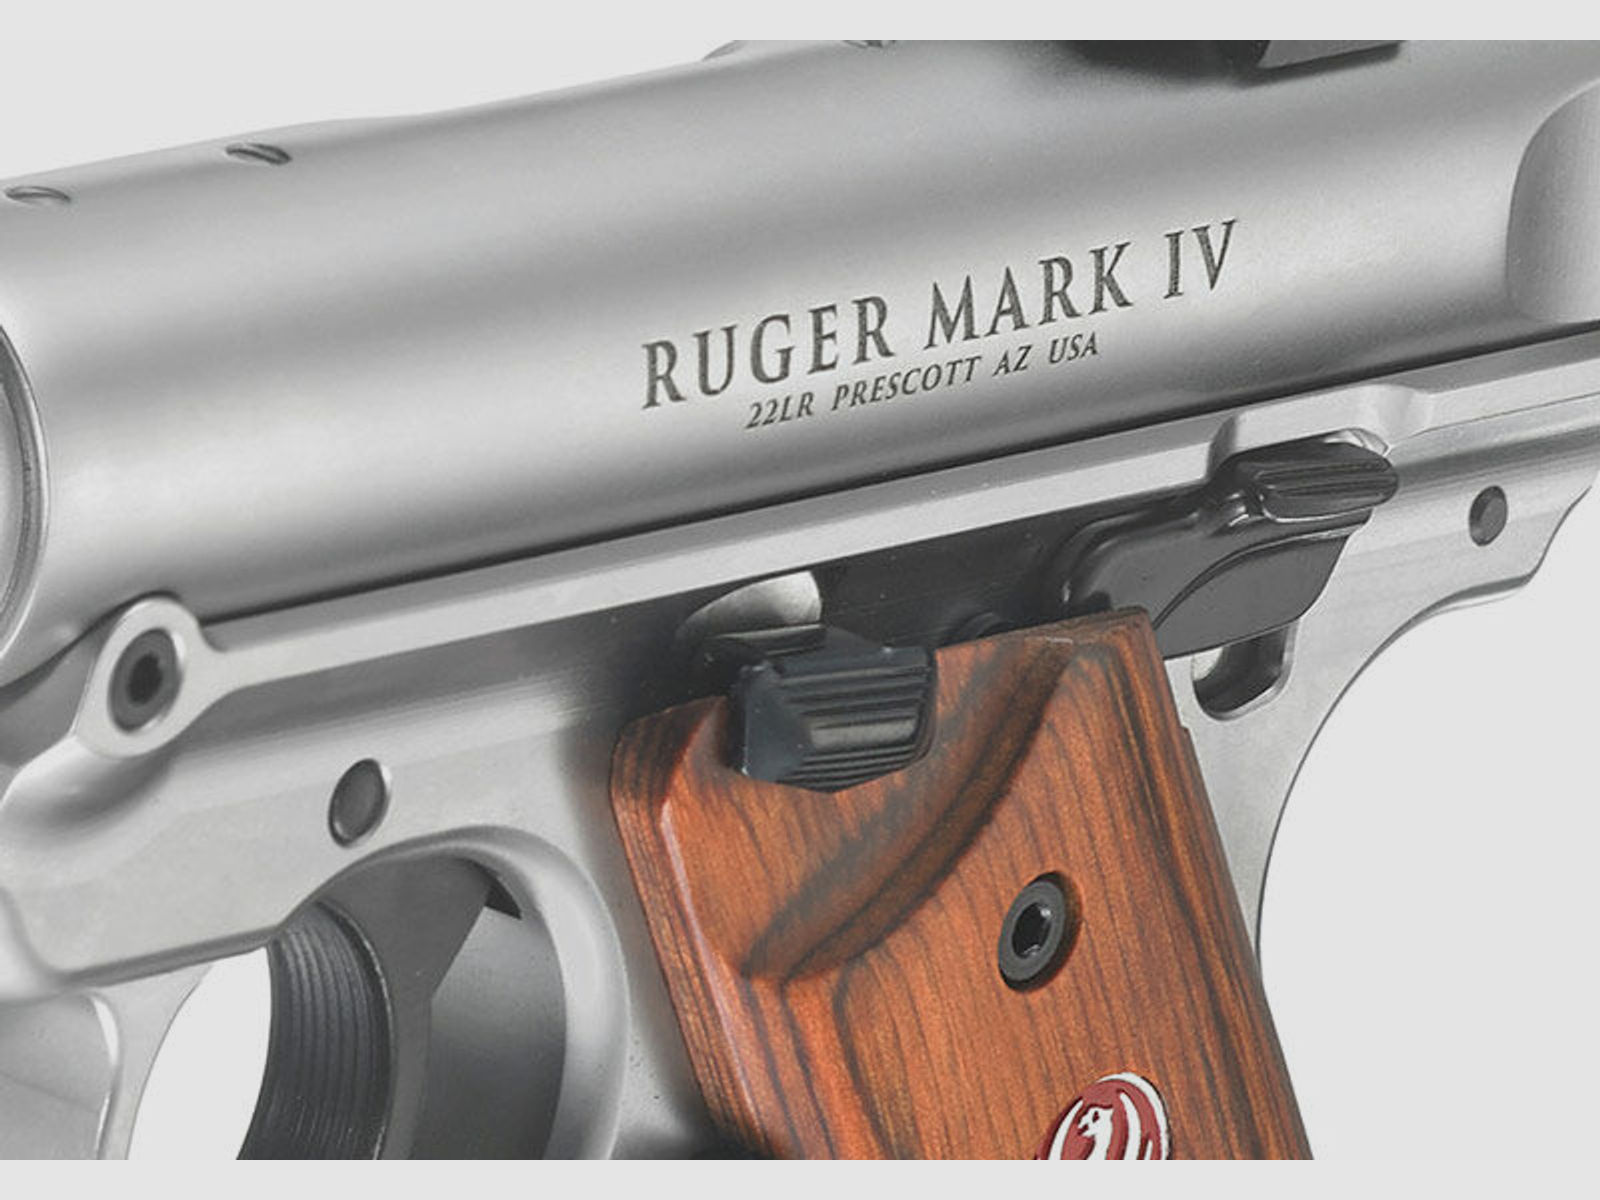 Ruger	 Mark IV Hunter 6,88" stainless